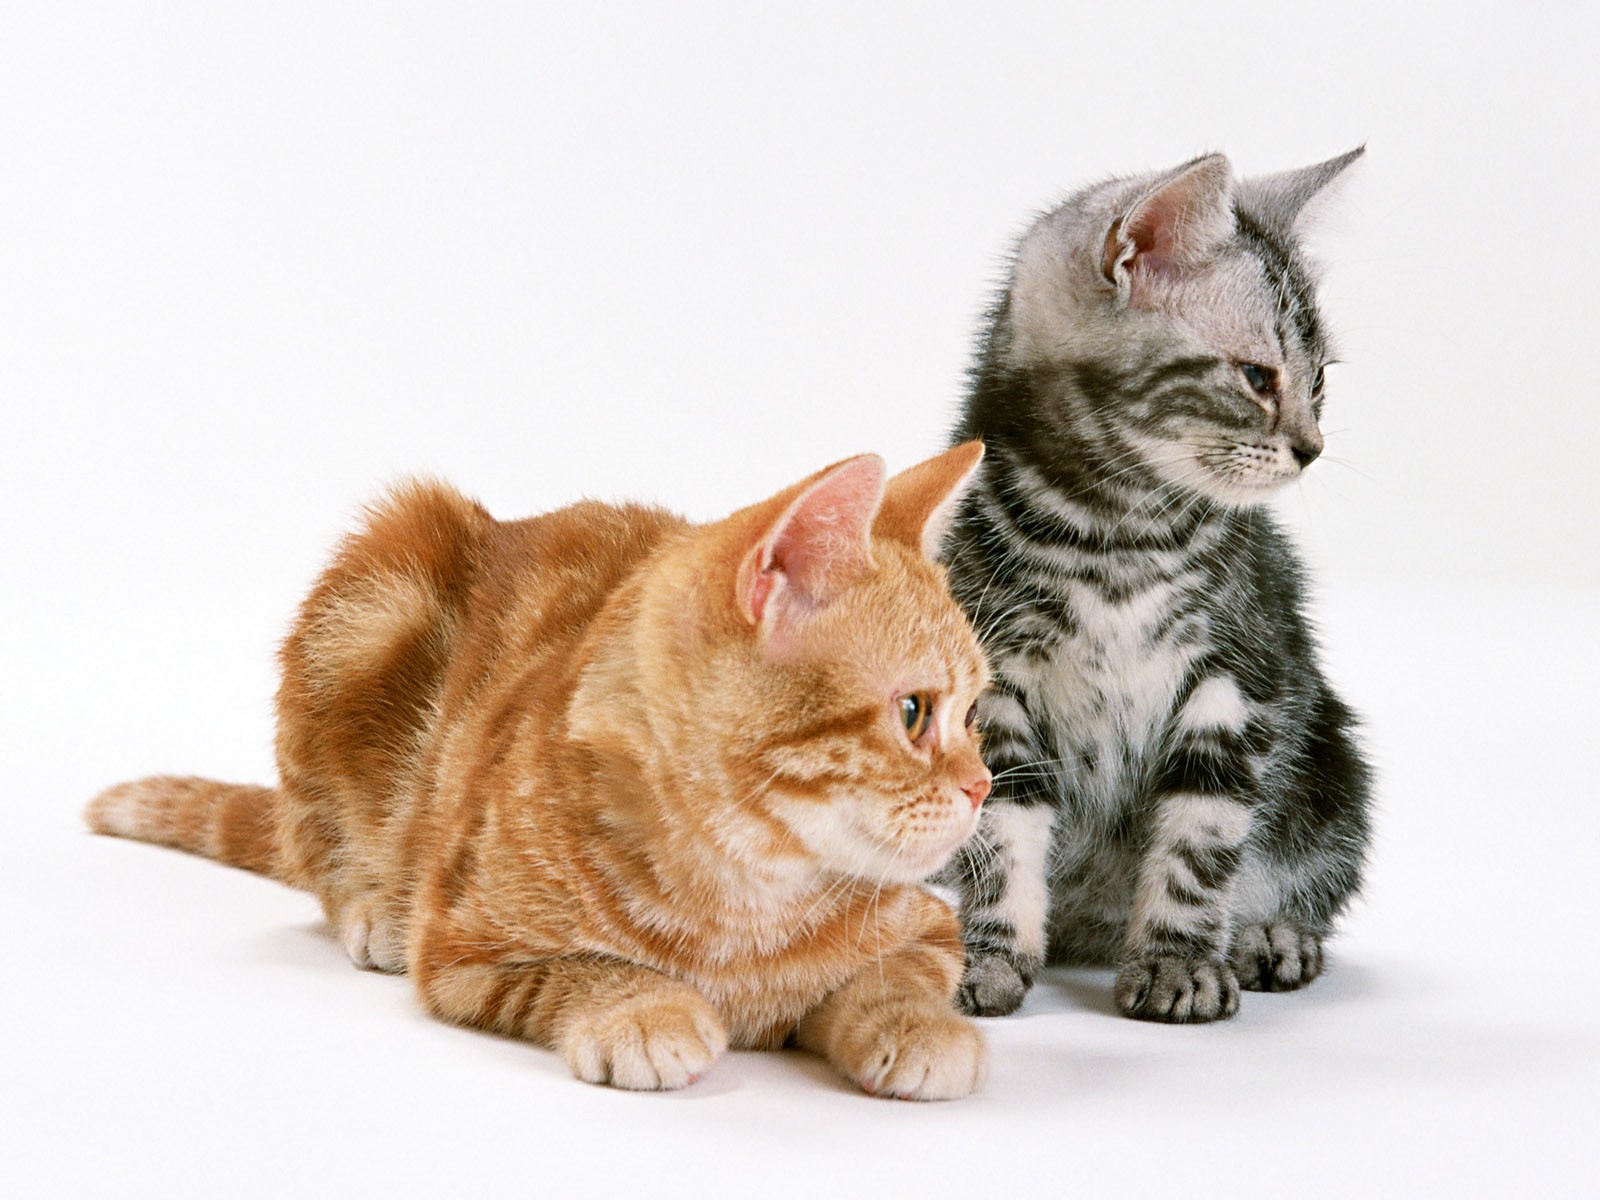 Скачать обои бесплатно Кошка, Животные, Кошки картинка на рабочий стол ПК